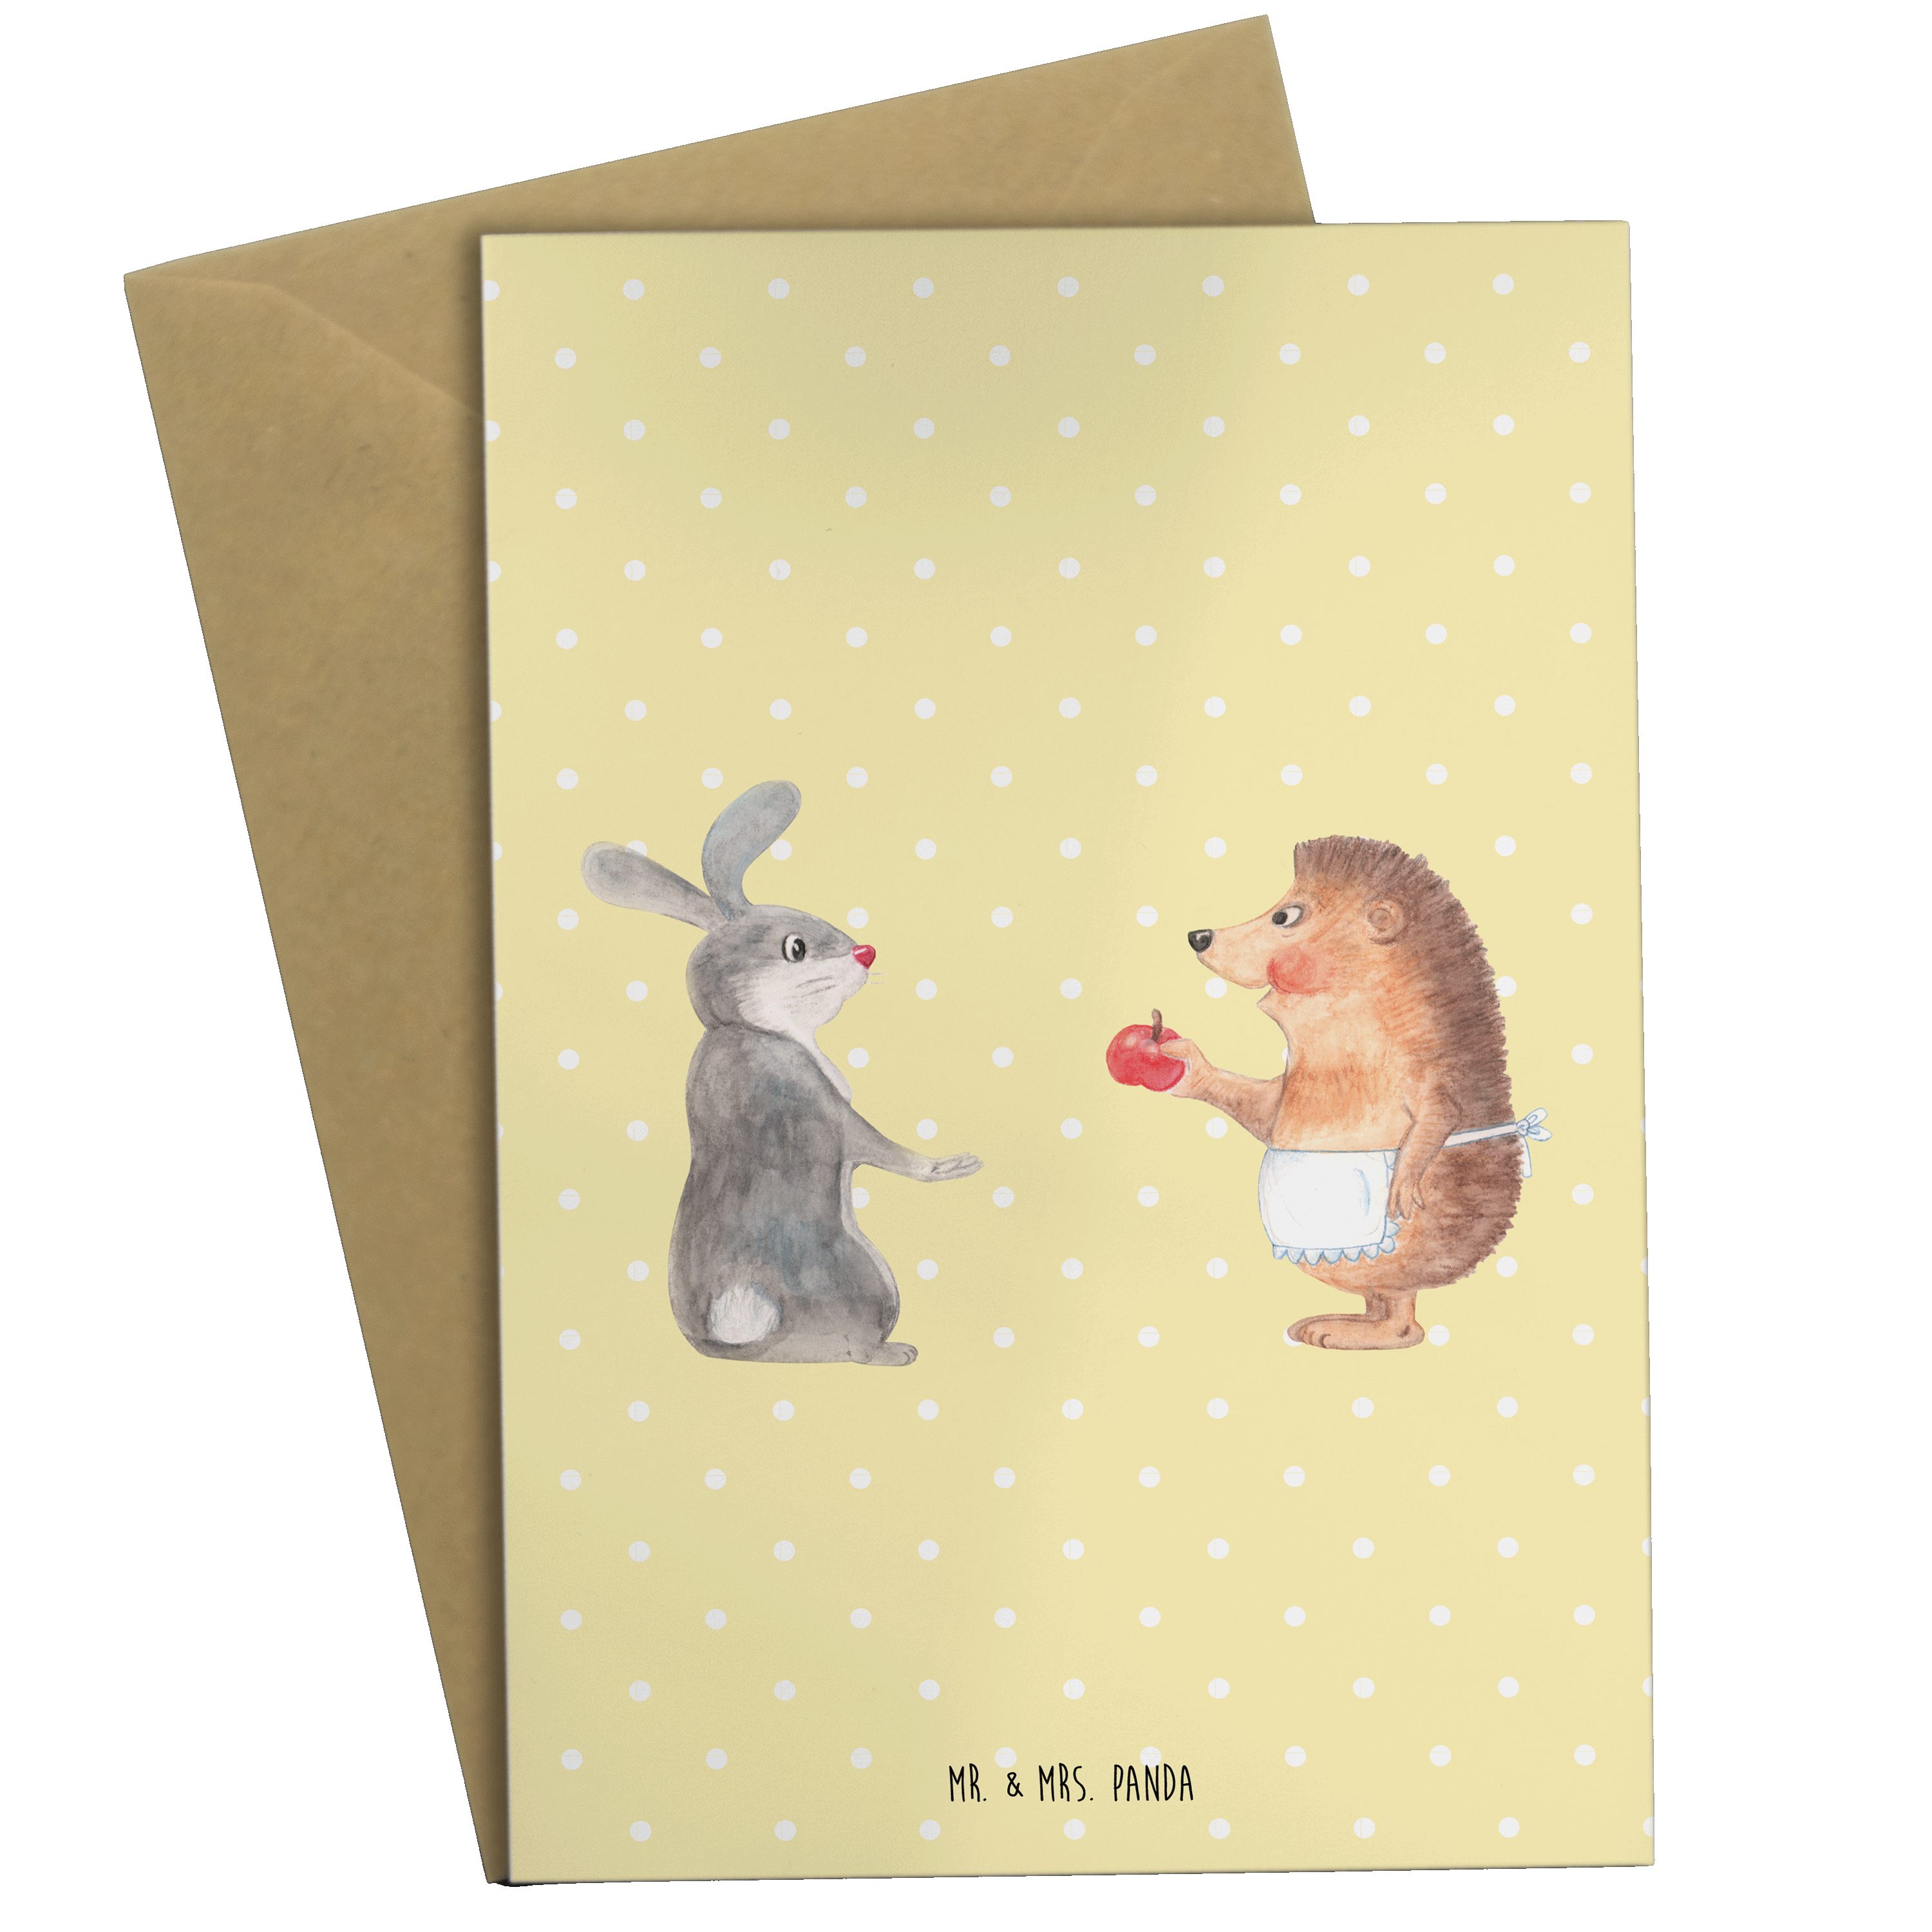 Mrs. ist & - Schmerz Mr. - Gelb nie Glückwunschkart Geschenk, ohne Panda Pastell Liebe Grußkarte